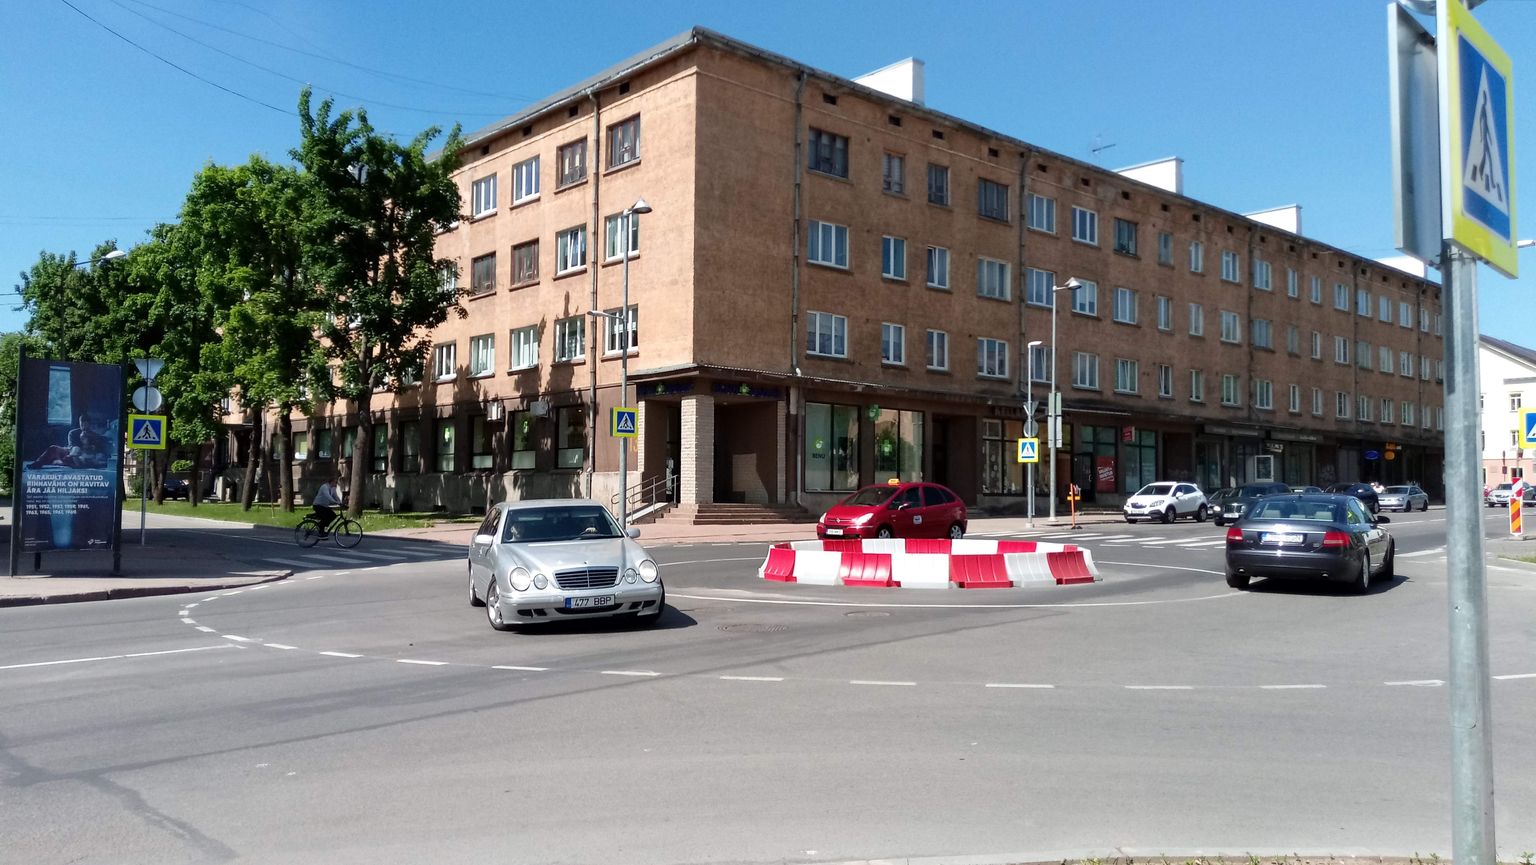 Перекресток улиц Пушкина и Мальми в Нарве тоже стал кольцевым.